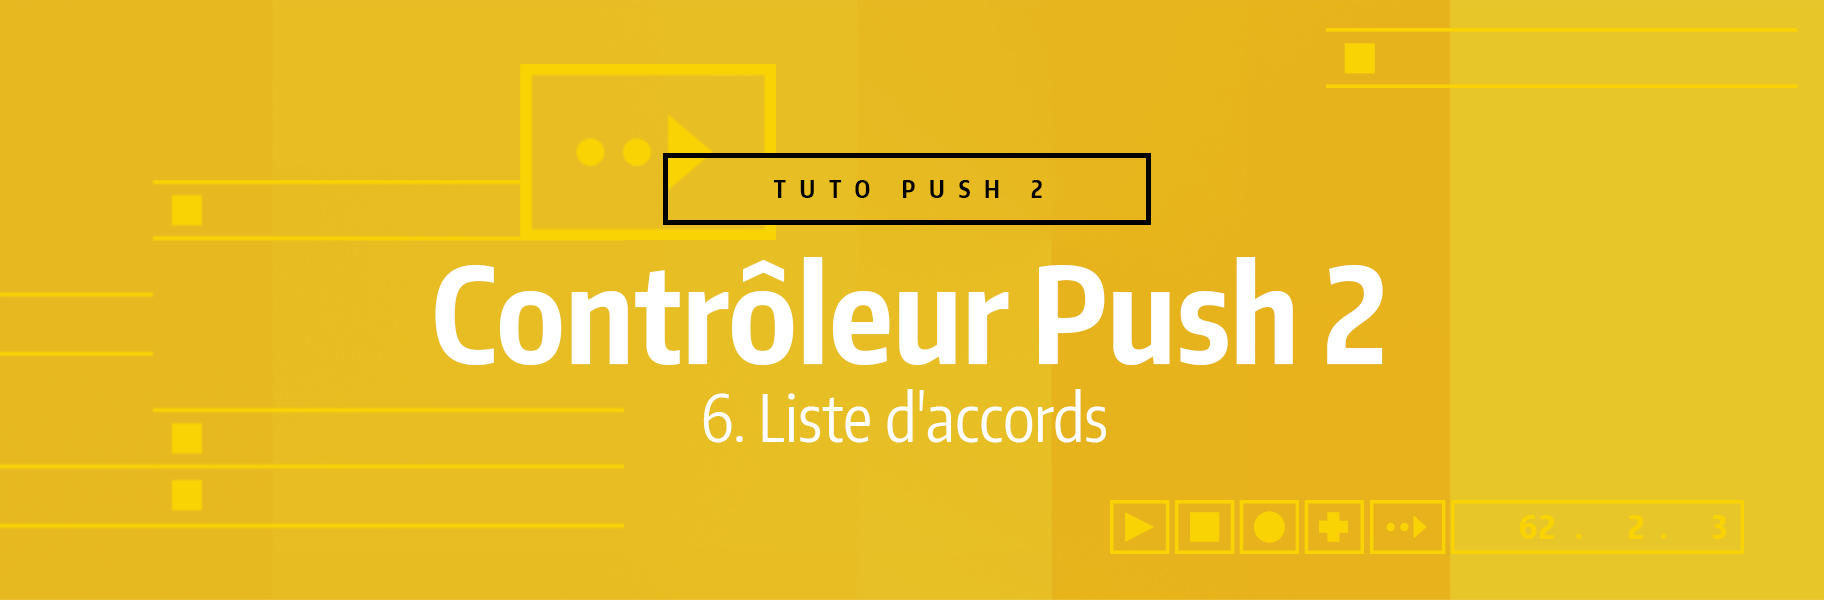 Tutoriel Ableton Live - Contrôleur Push 2 - 6. Liste d'accords